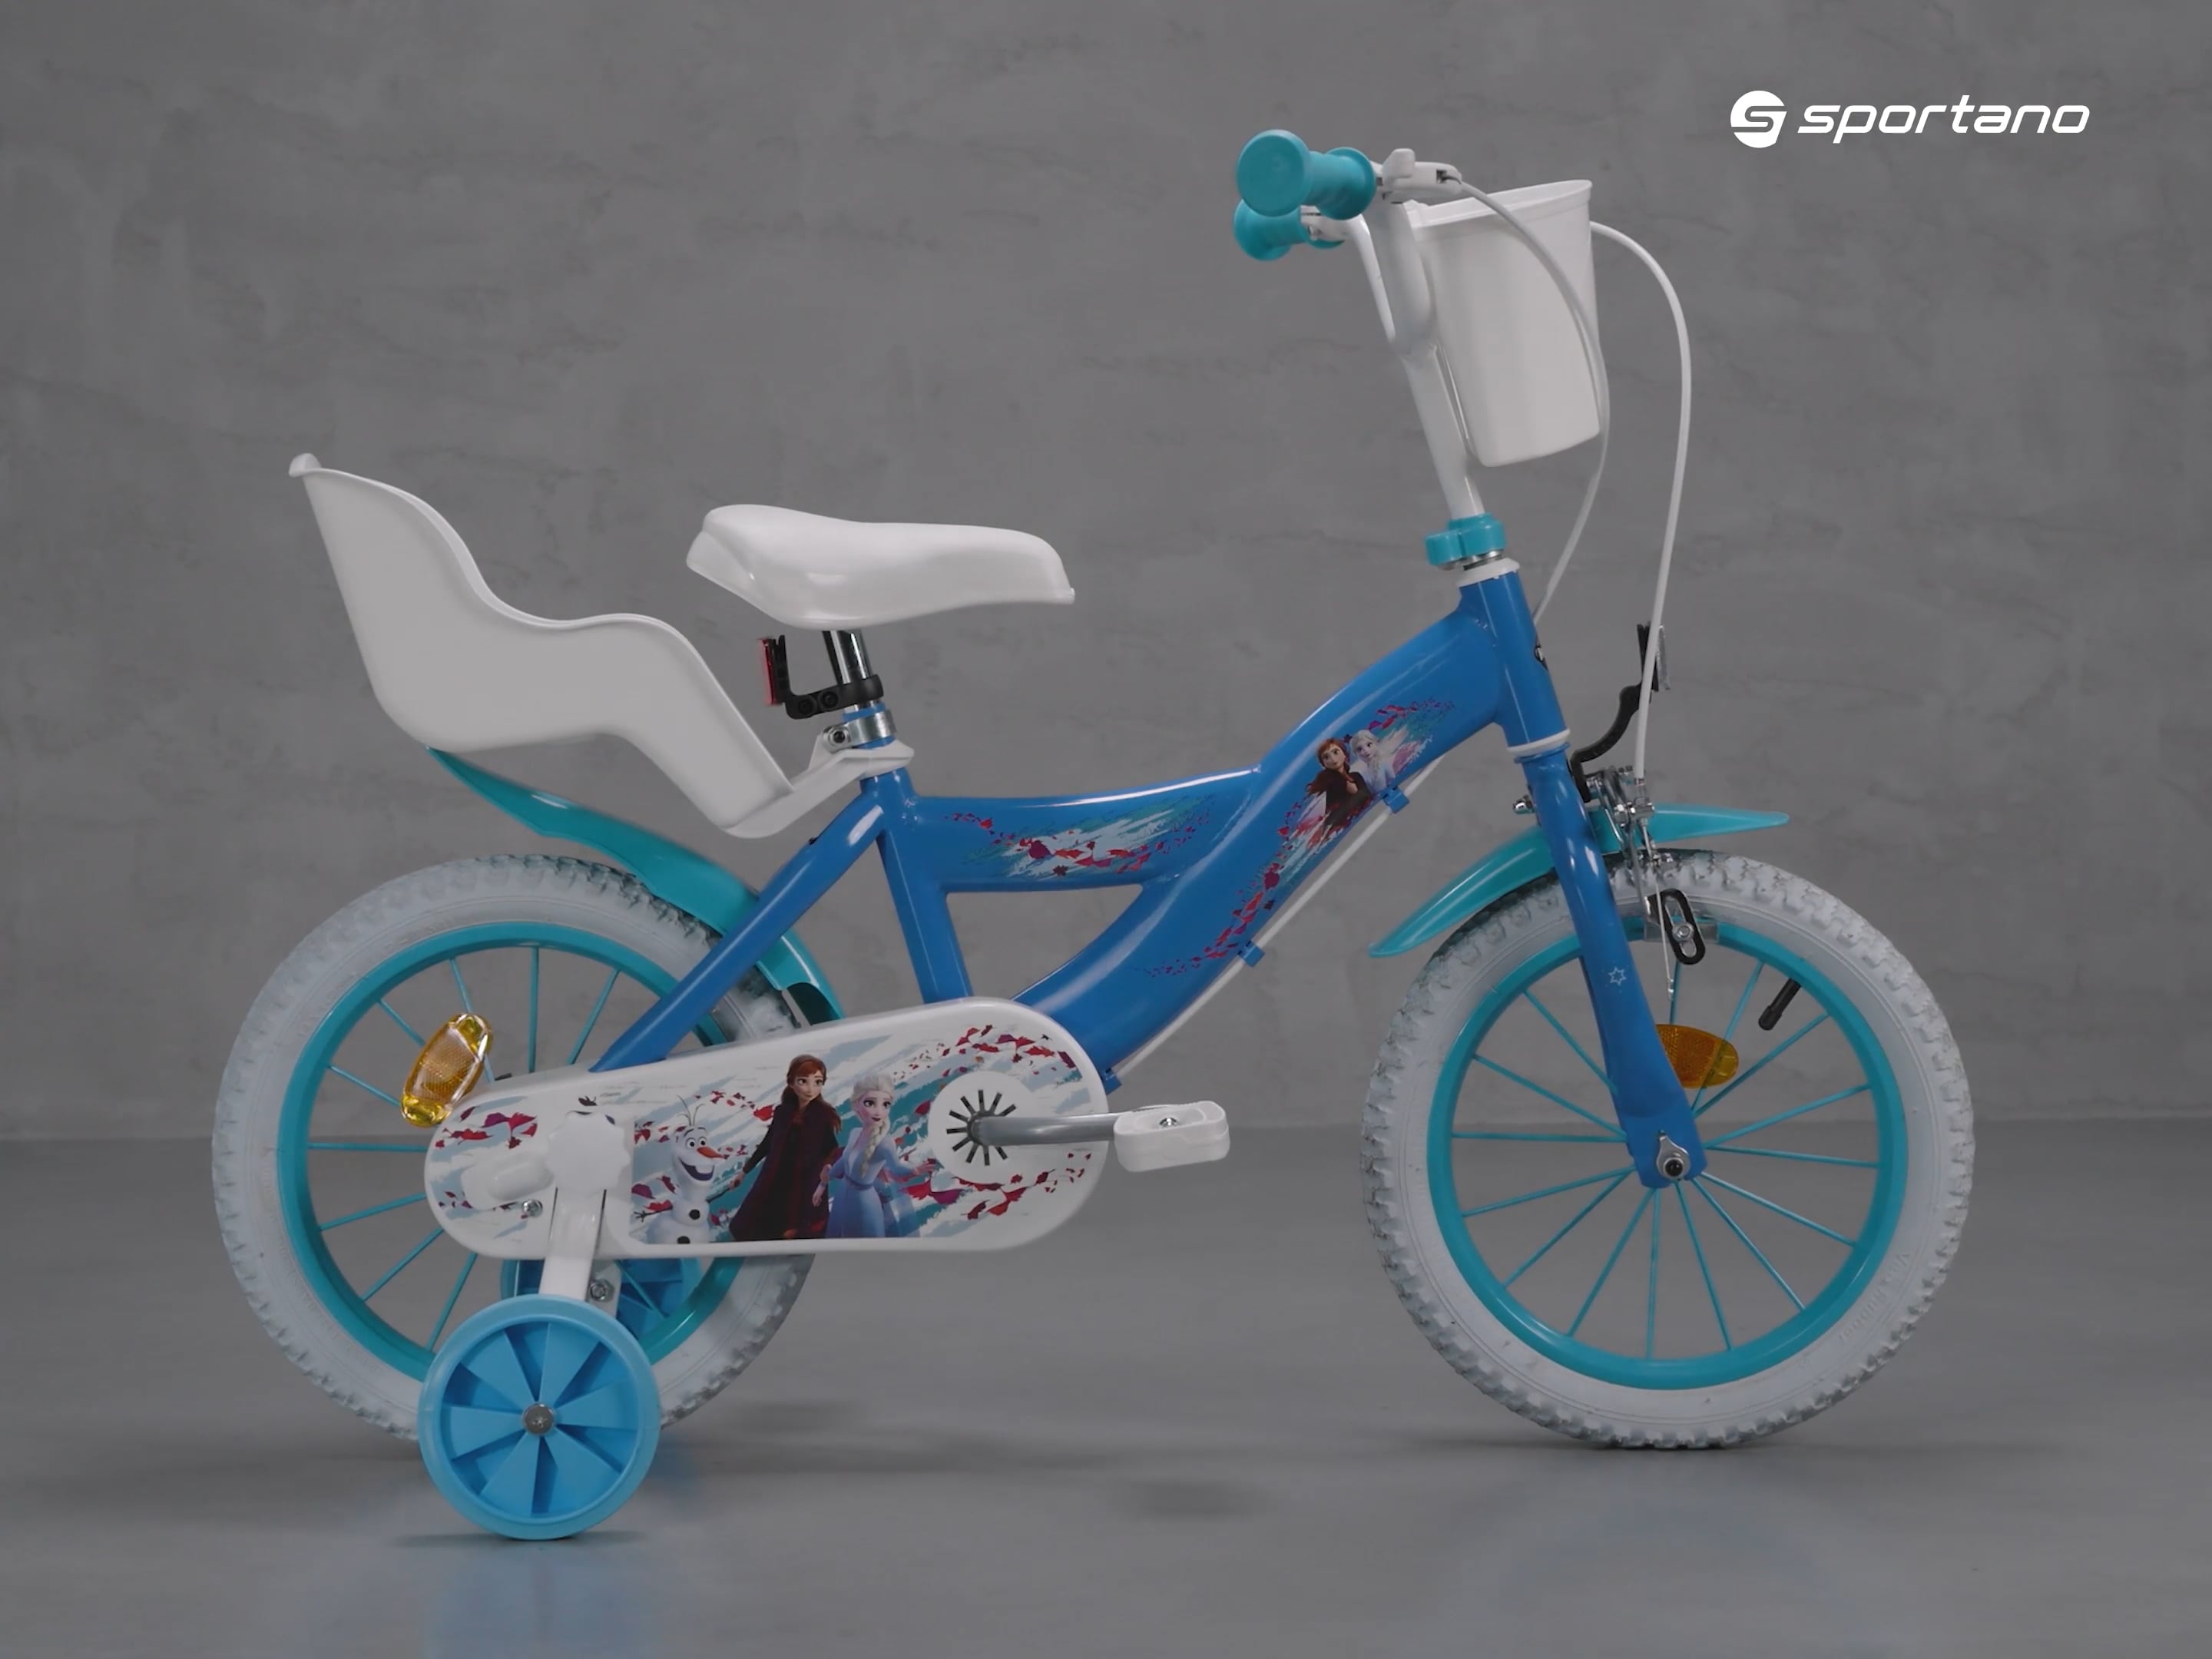 Παιδικό ποδήλατο Huffy Frozen μπλε 24291W